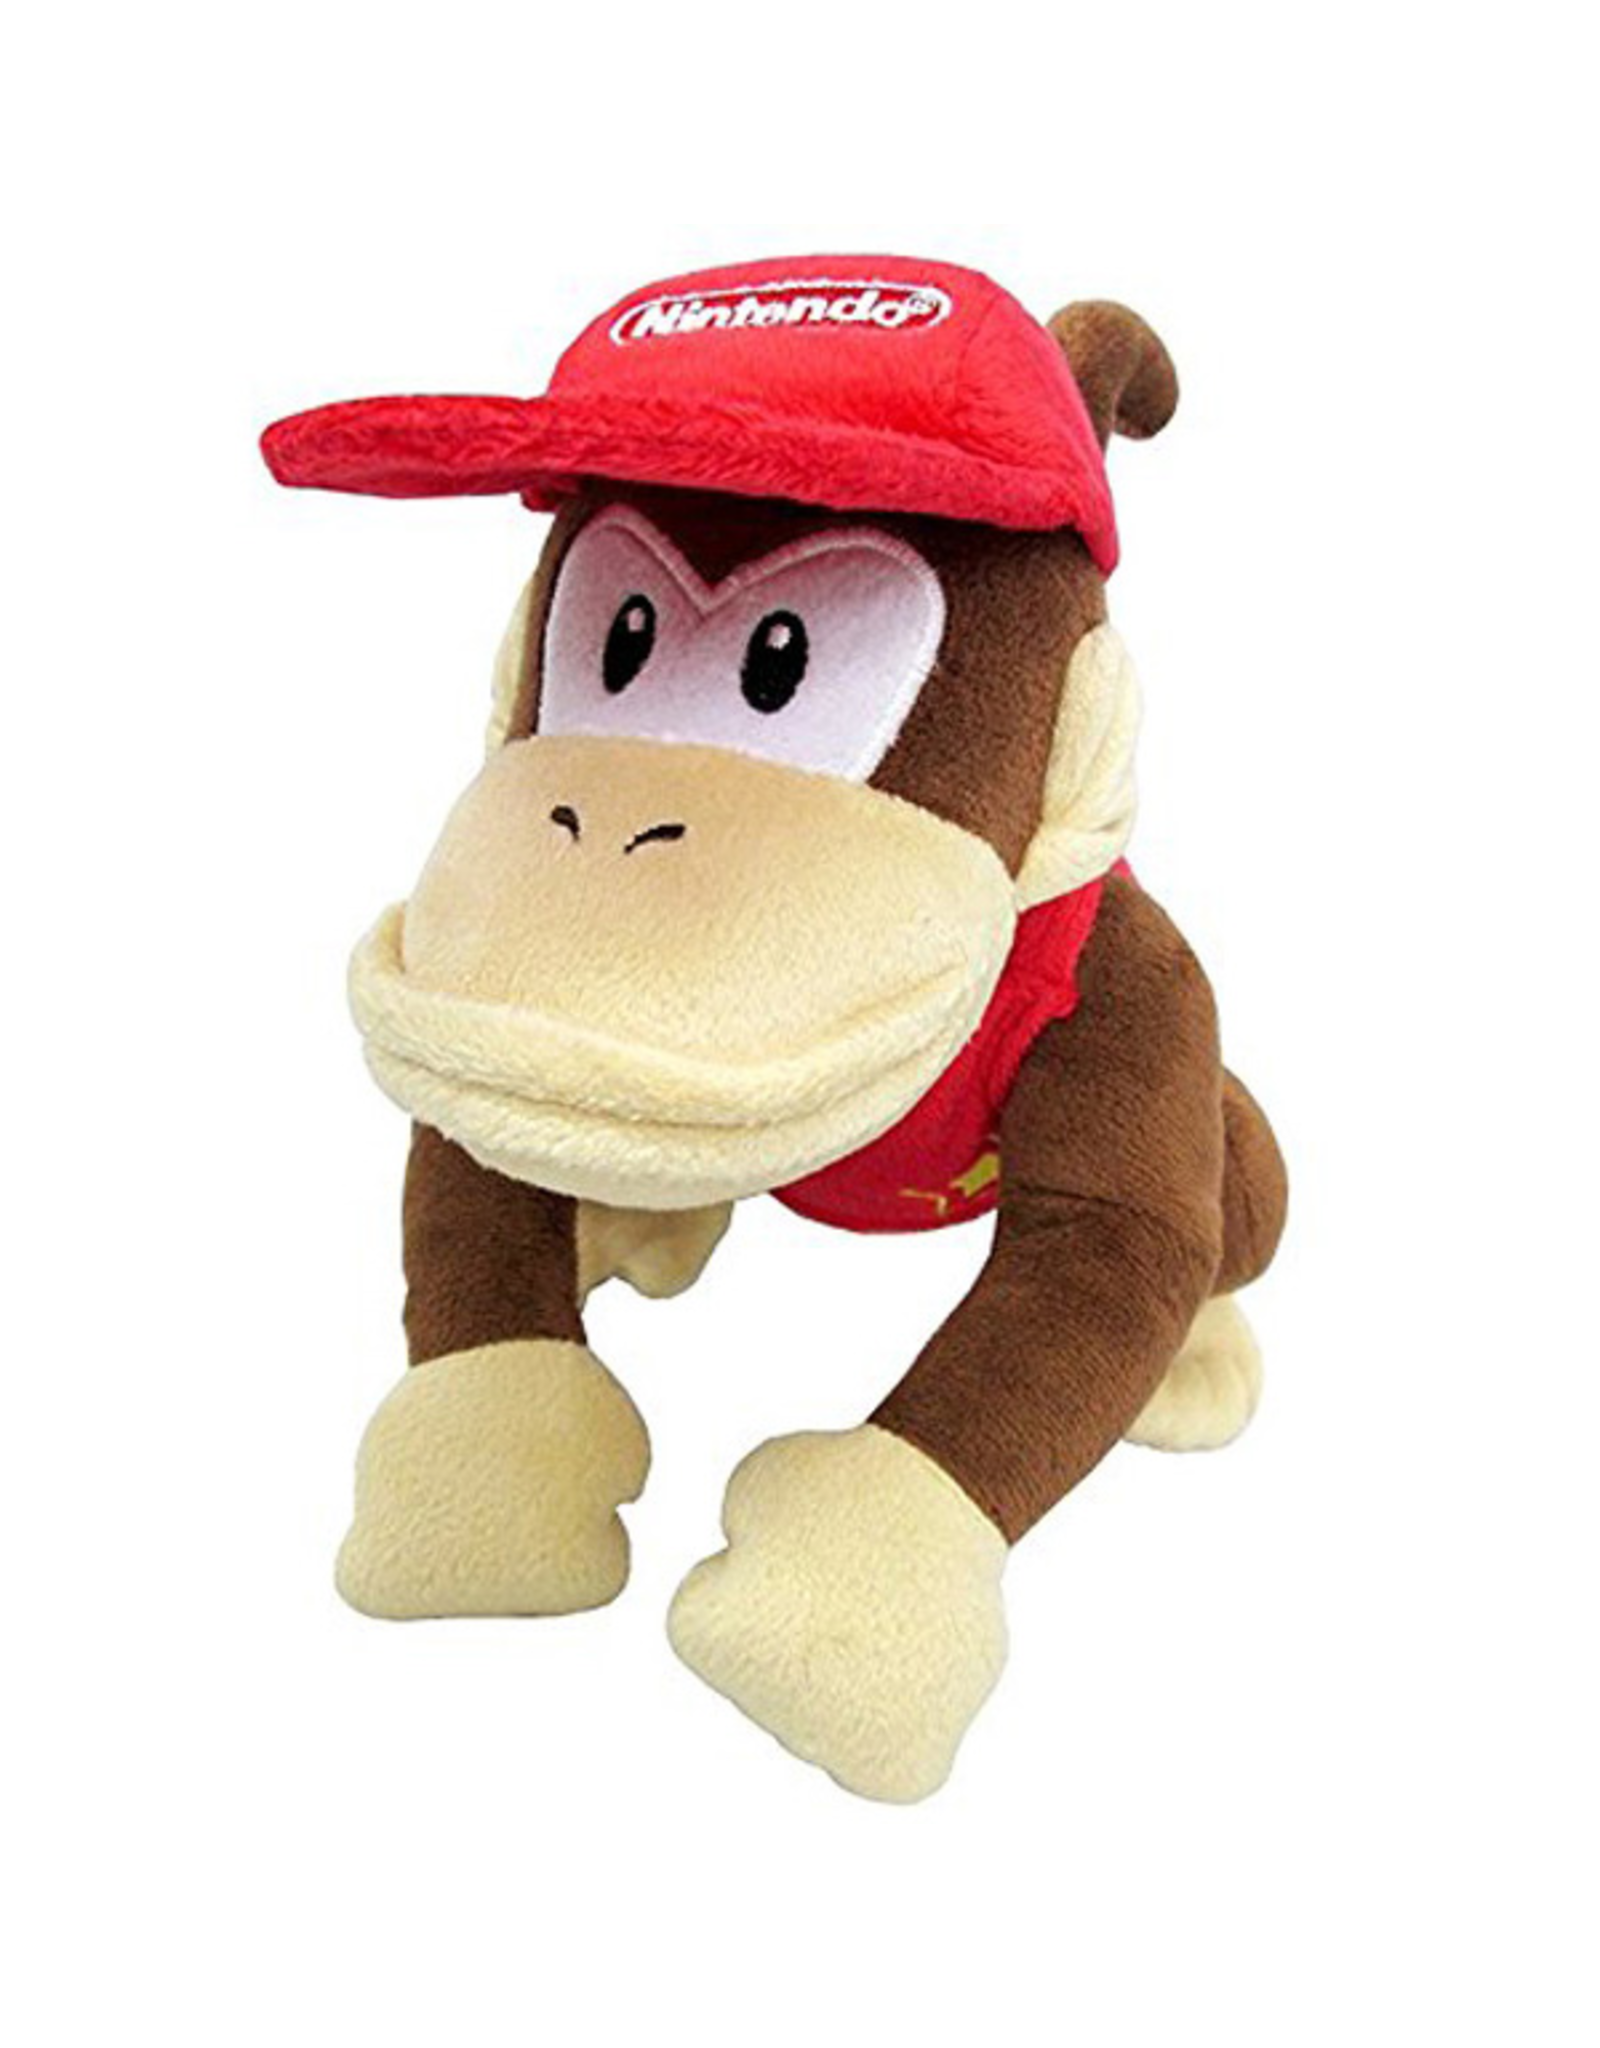 Little Buddy Donkey Kong - Diddy Kong - 7" Plush